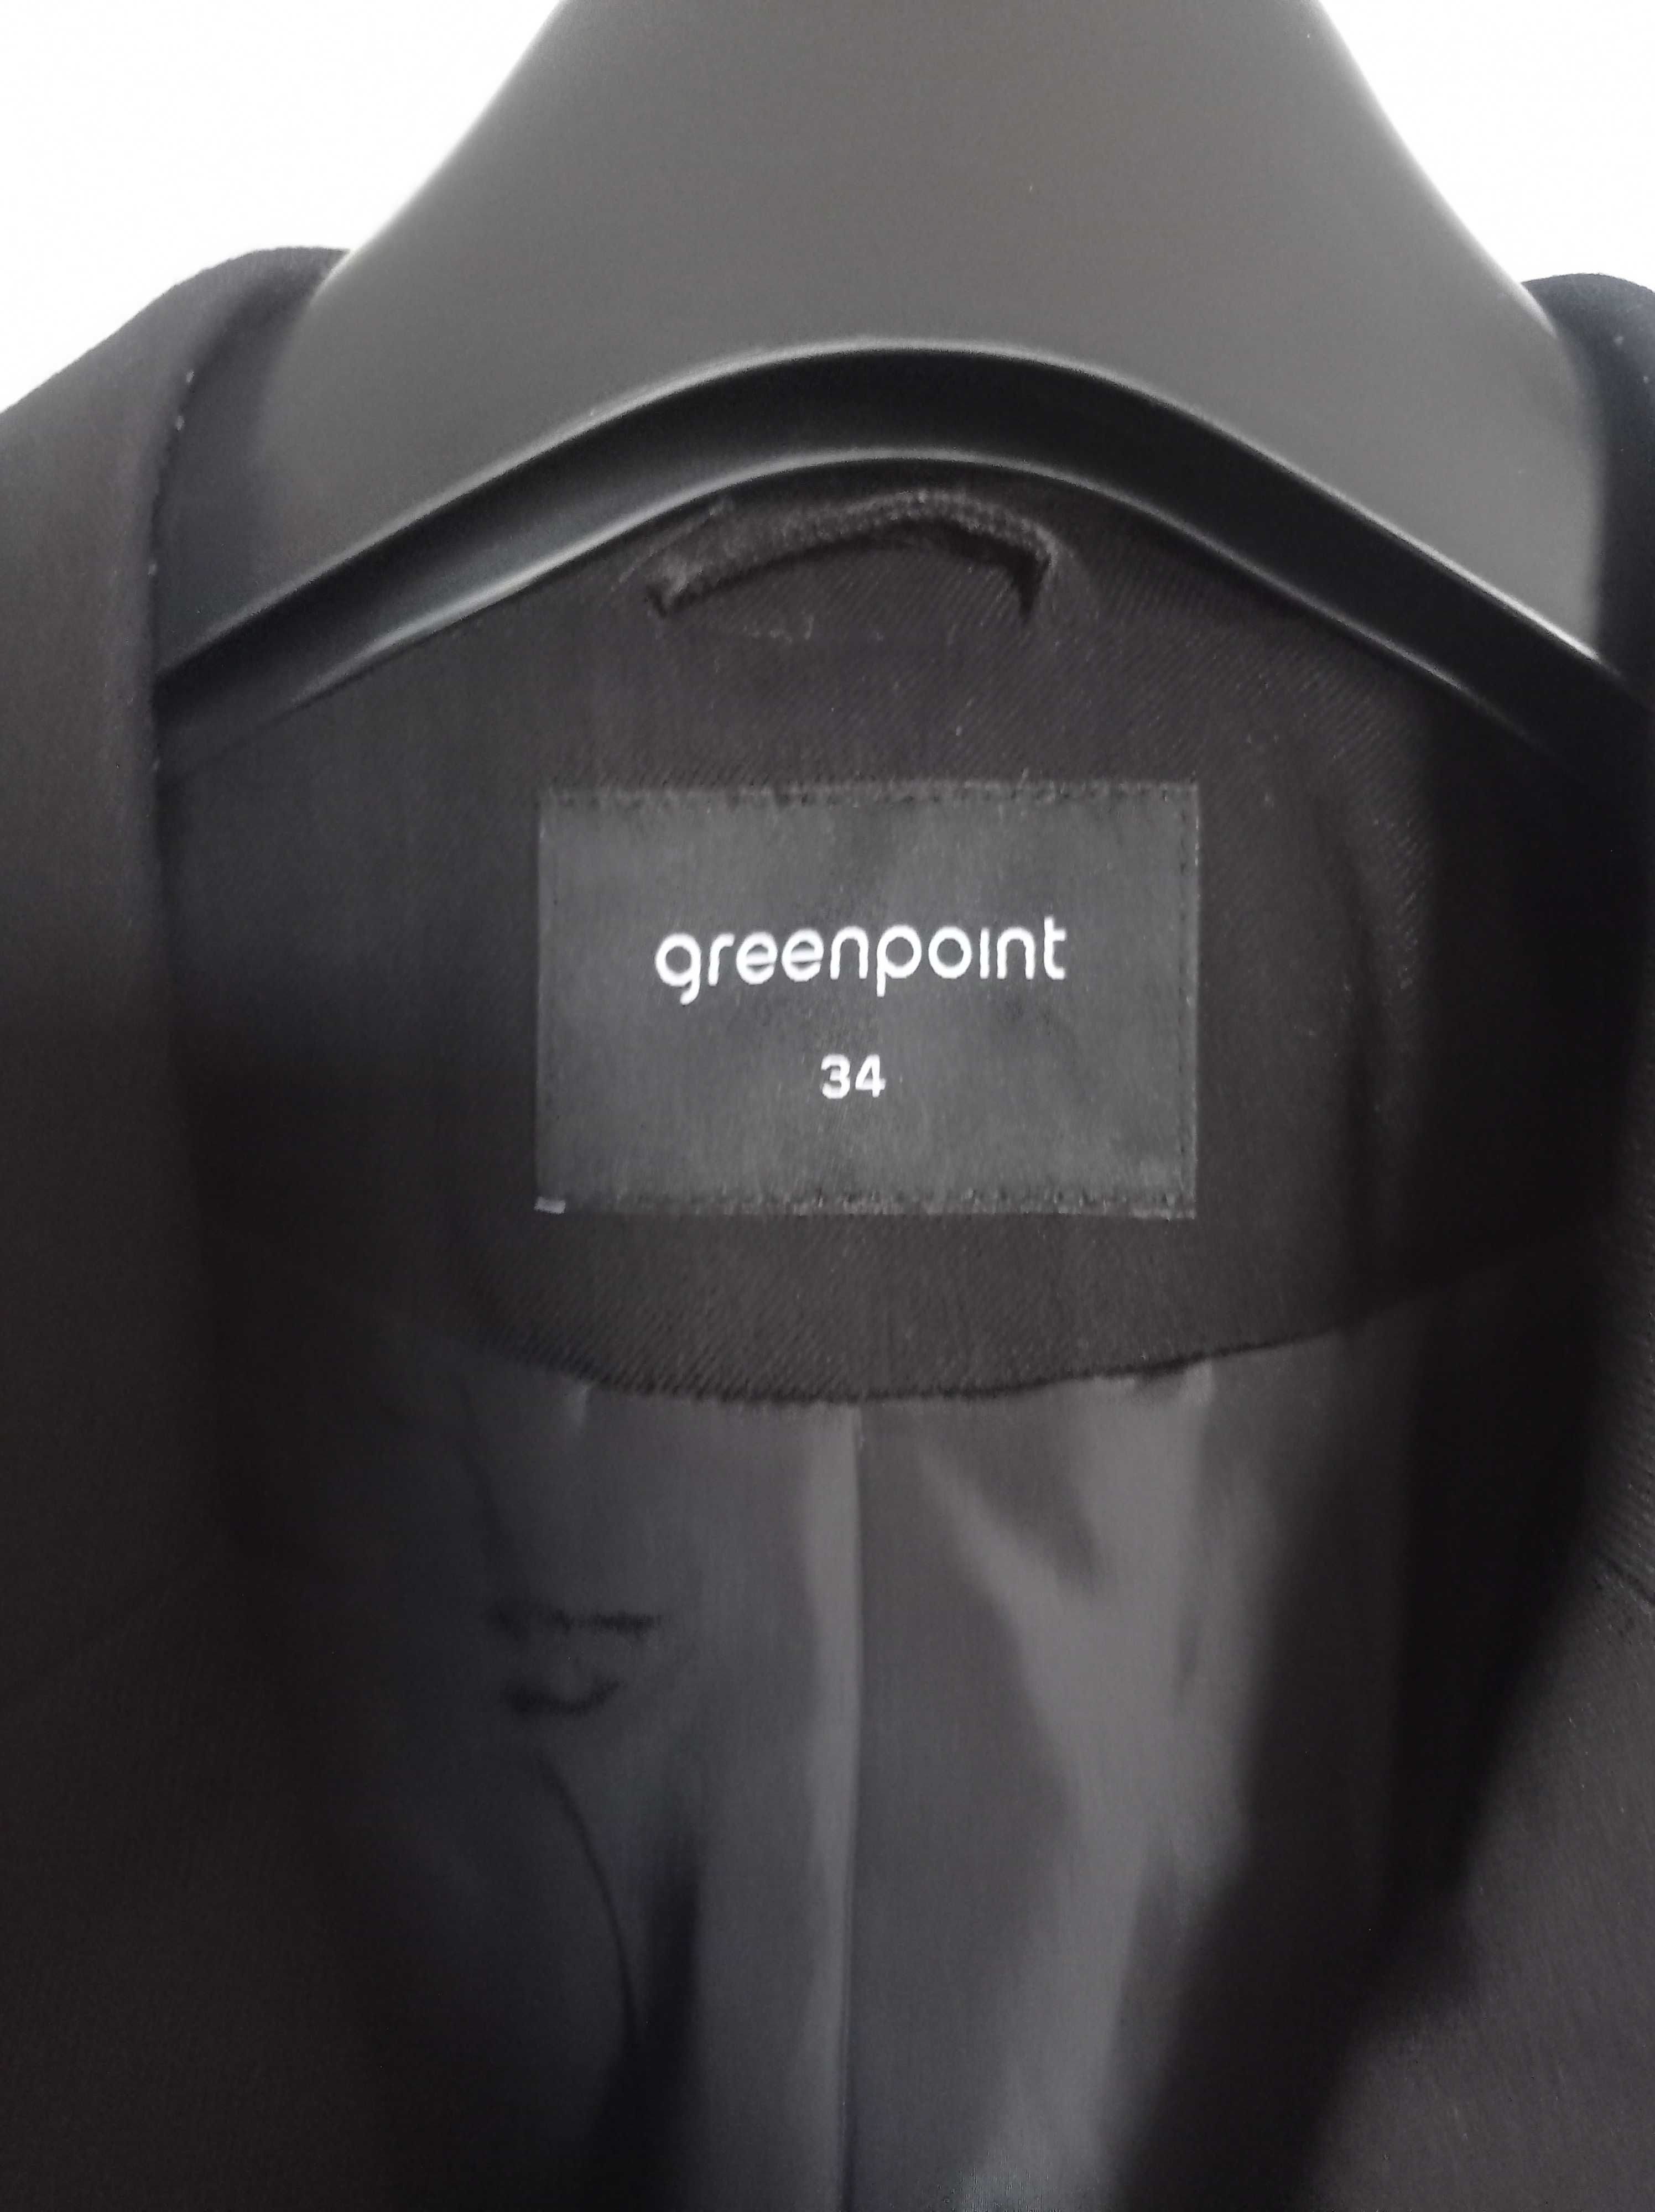 Czarny żakiet firmy Greenpoint rozmiar 34